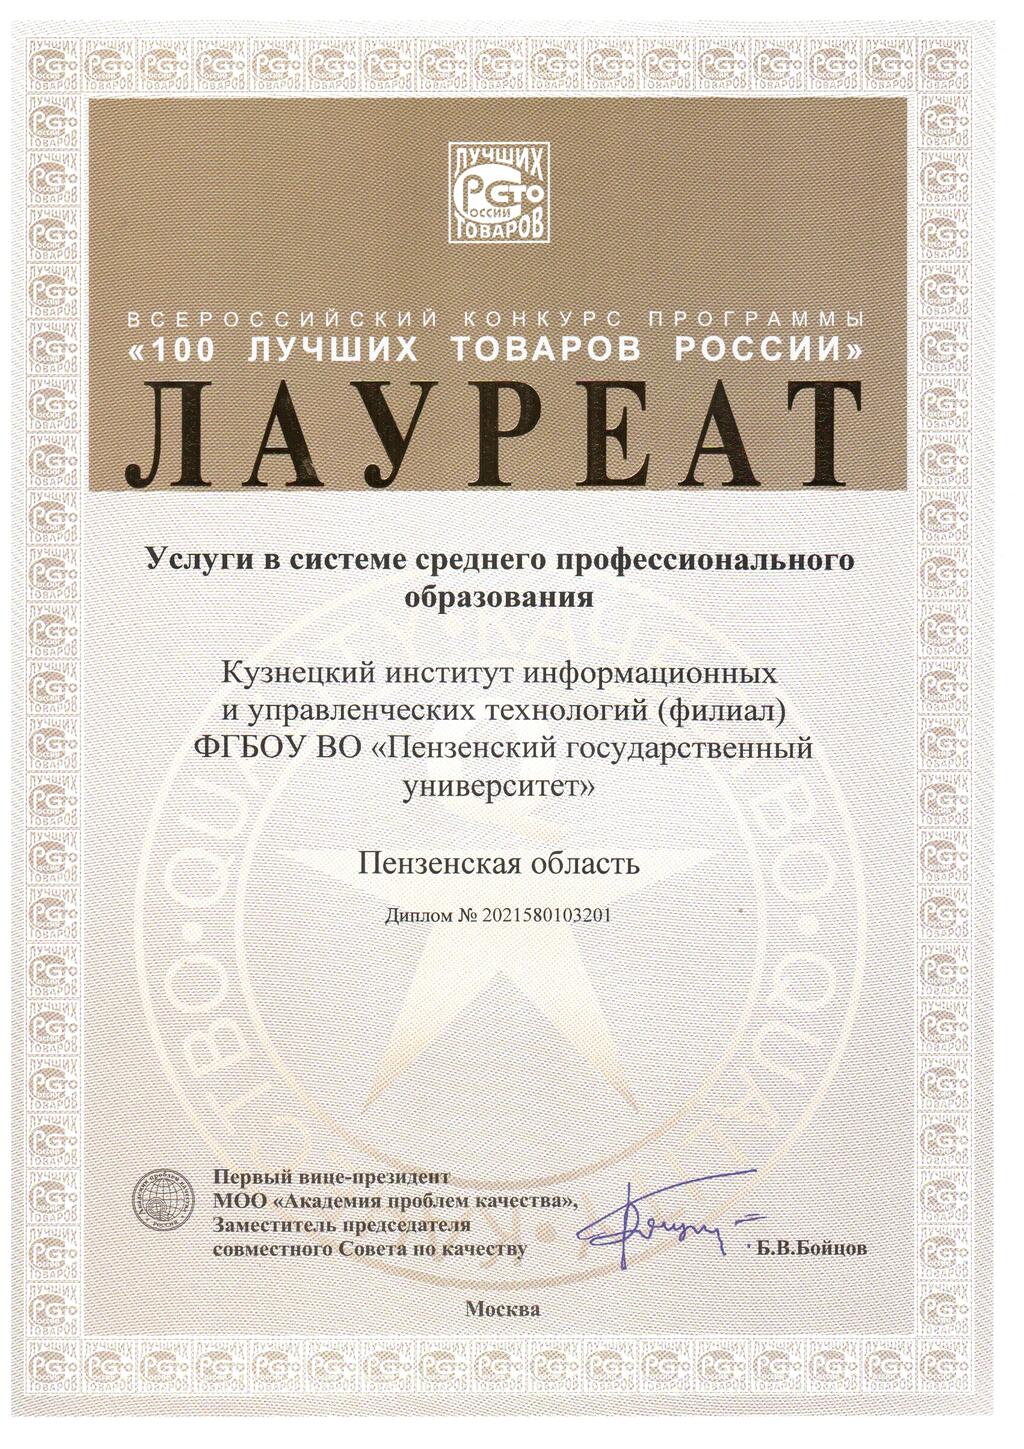 Кузнецкий институт информационных и управленческих технологий  стал лауреатом конкурса «100 лучших товаров России»